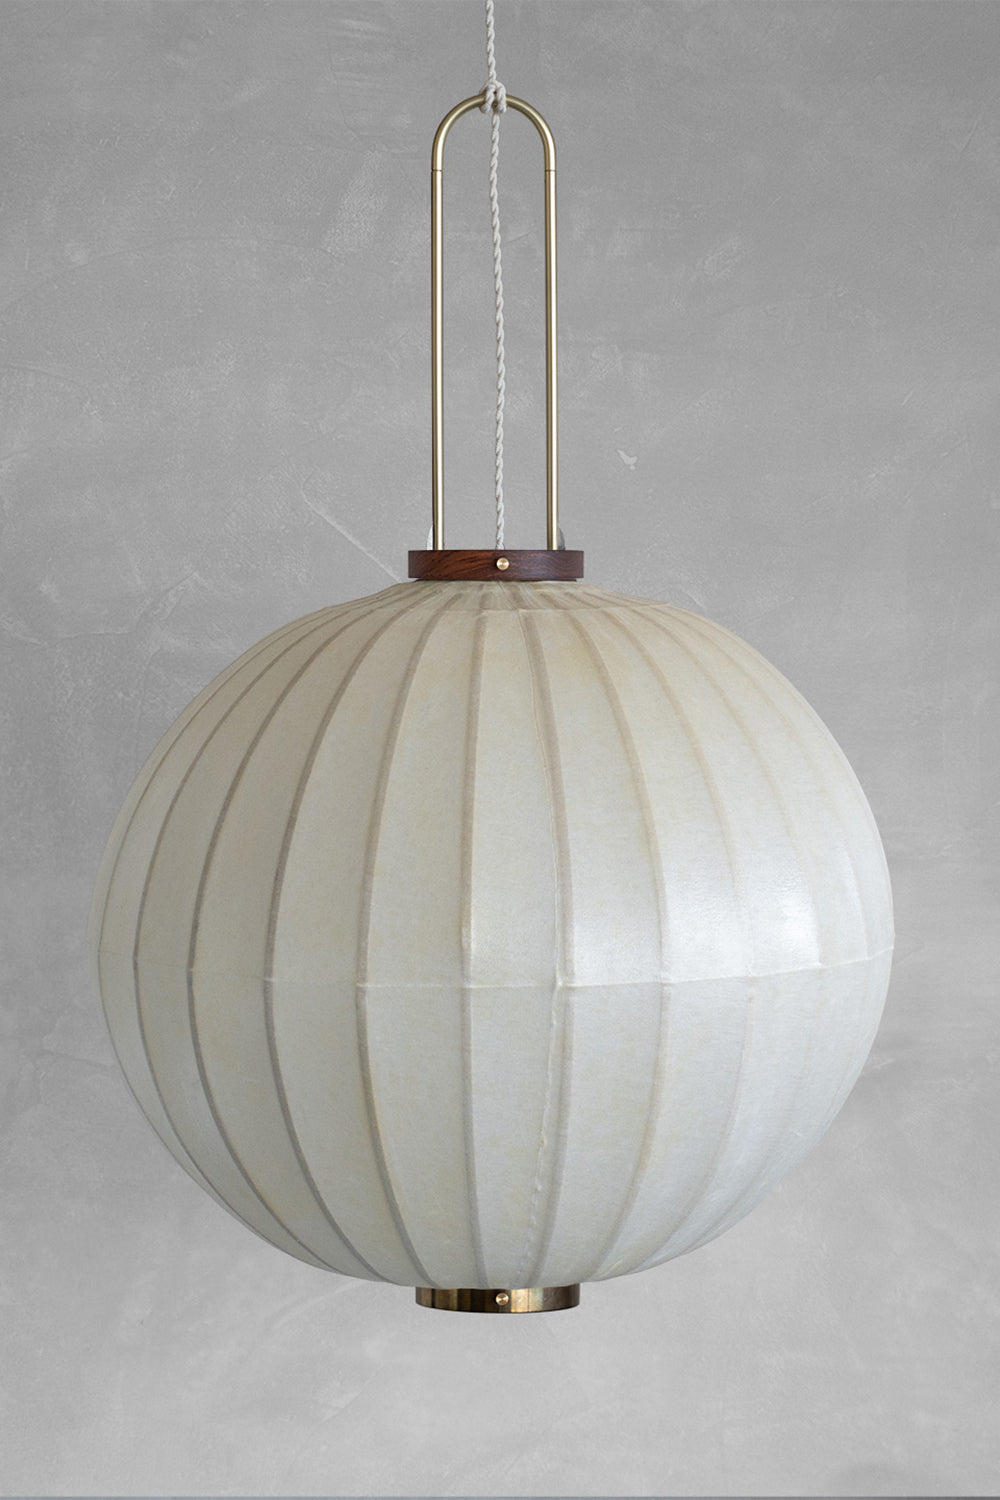 The round Mandarin shape Heritage Lantern White by Taiwan Lantern.